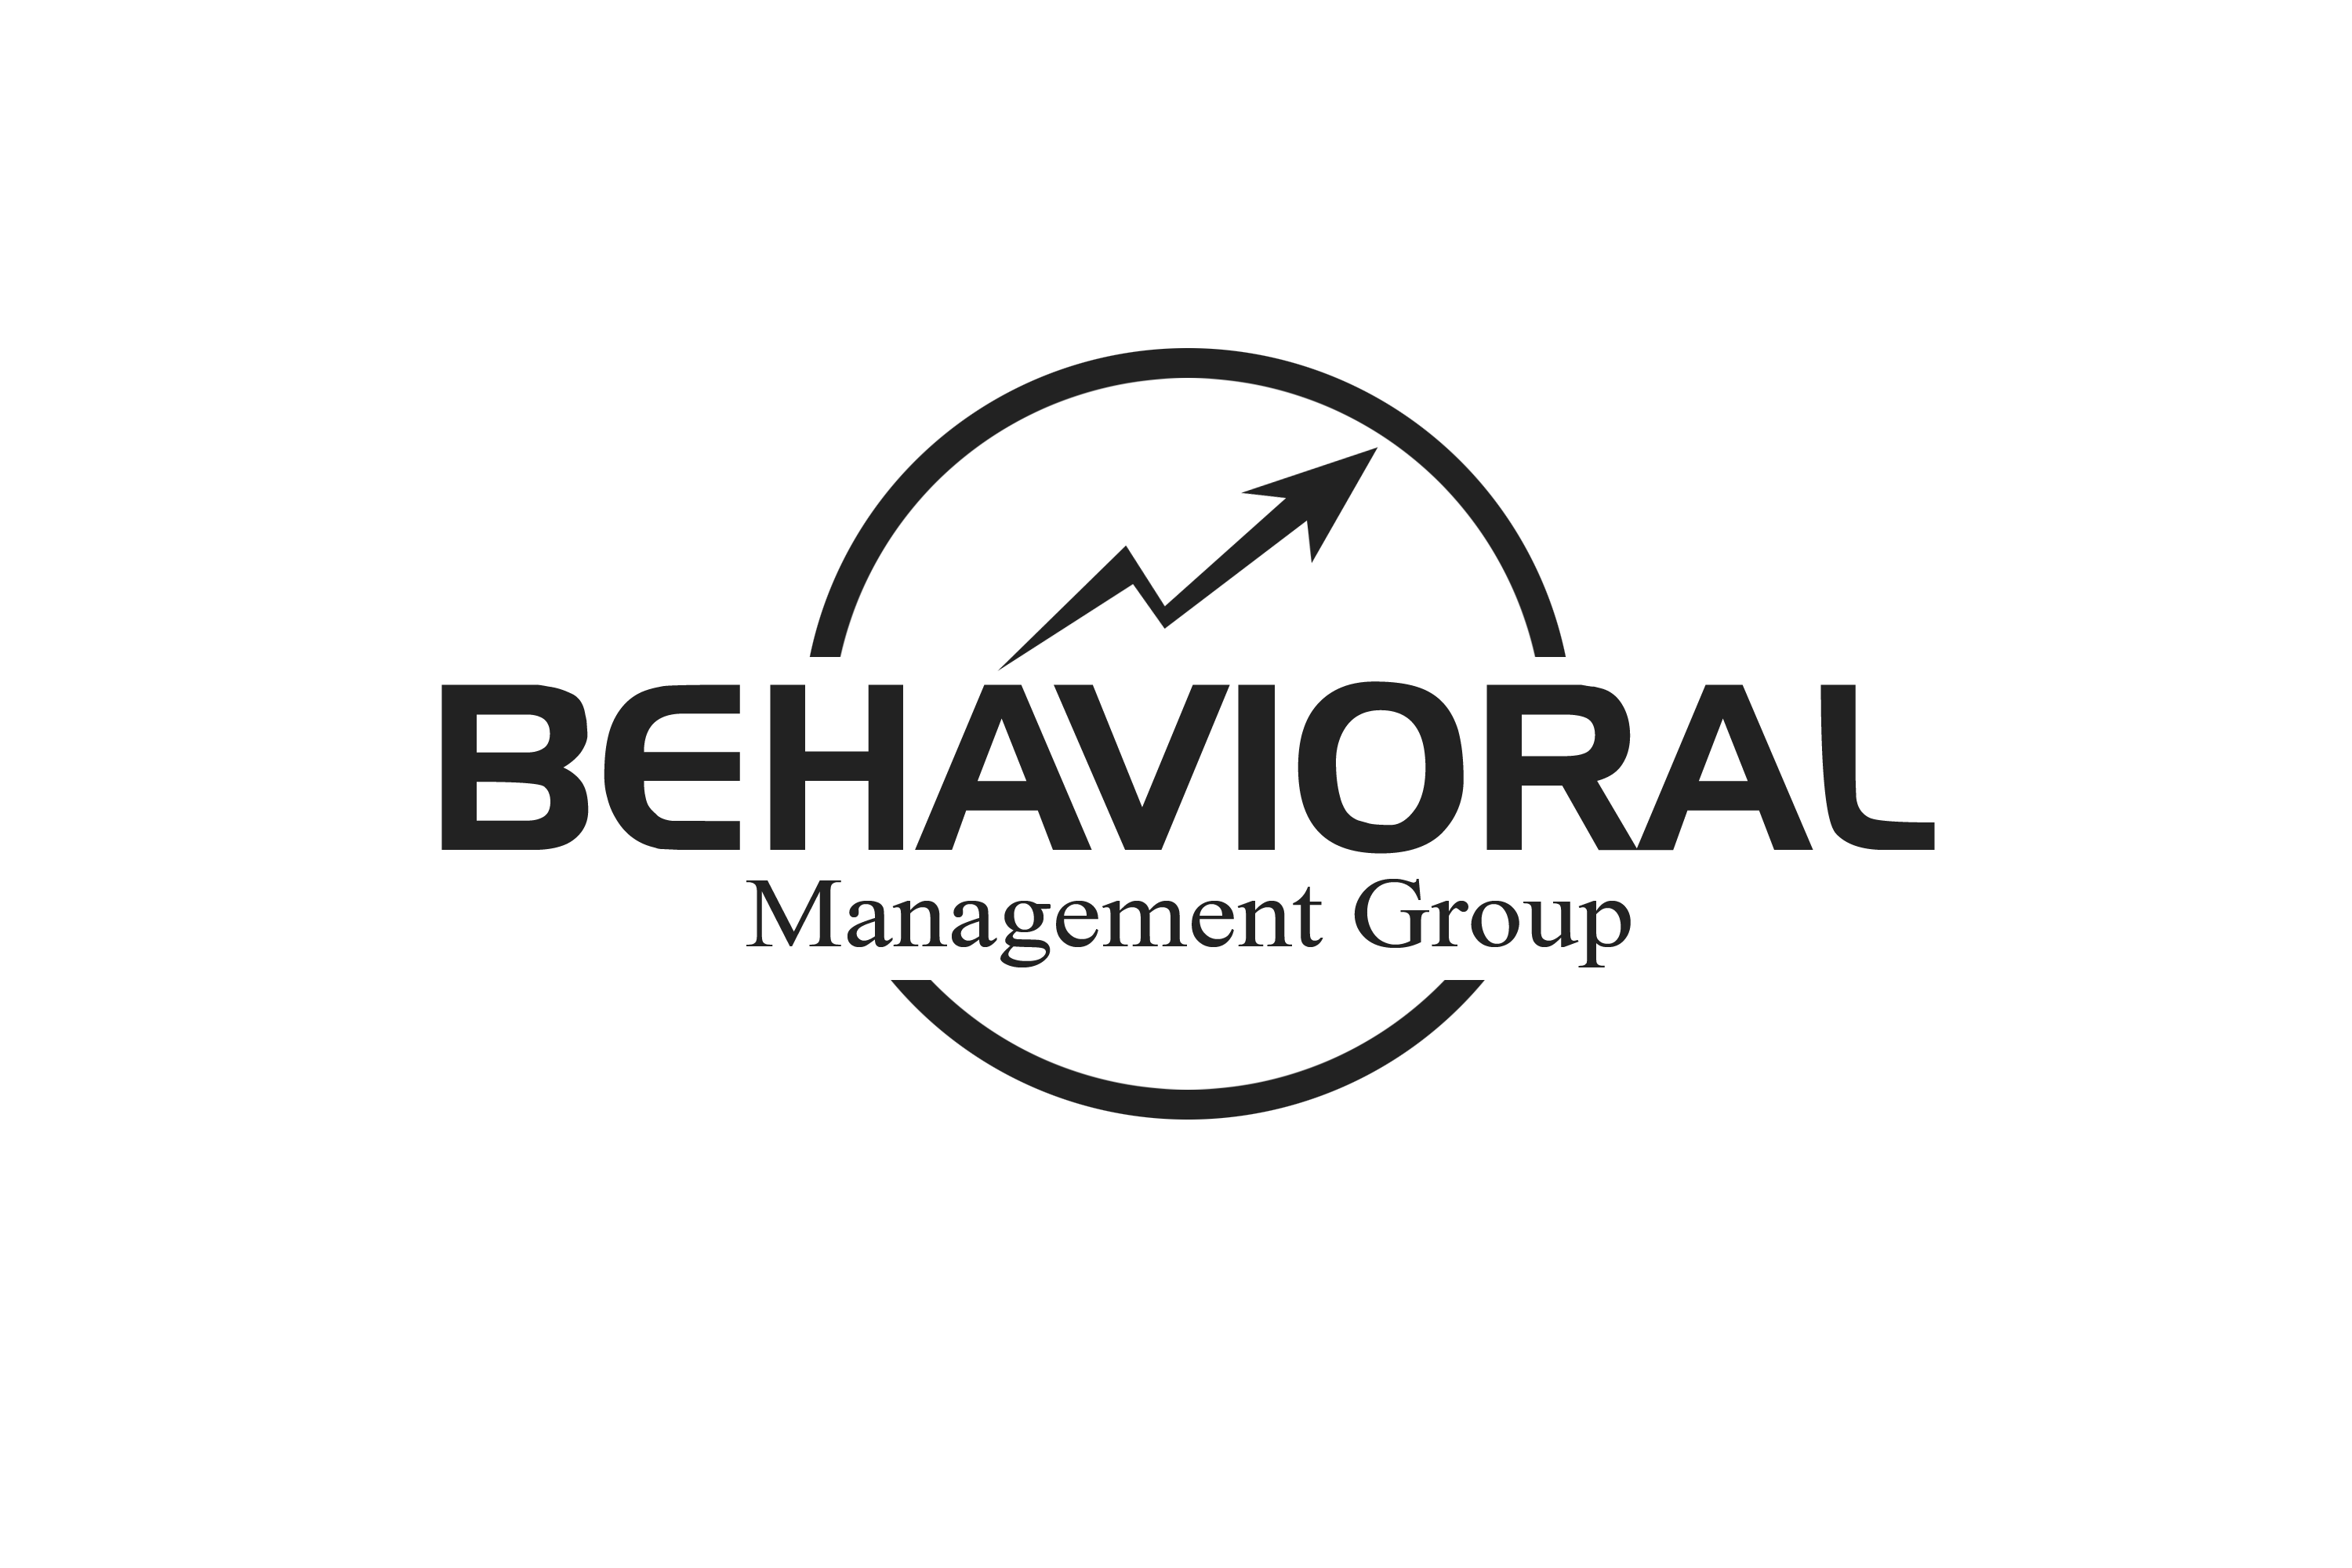 Behavioral Management Group